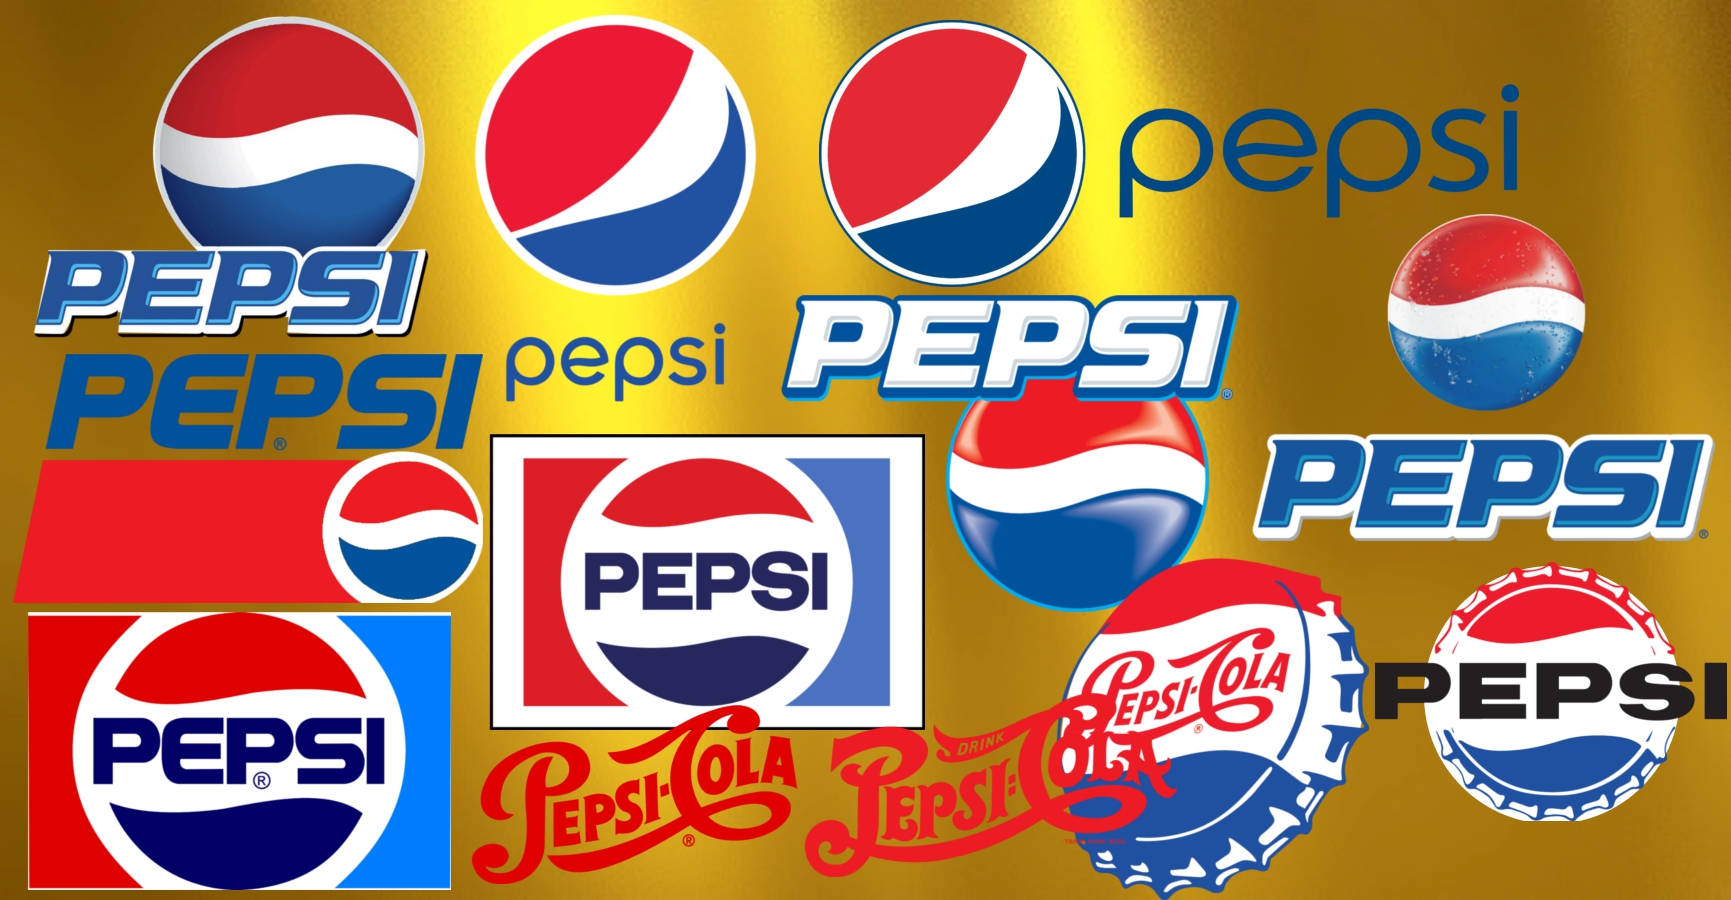 Pepsi logos.jpg